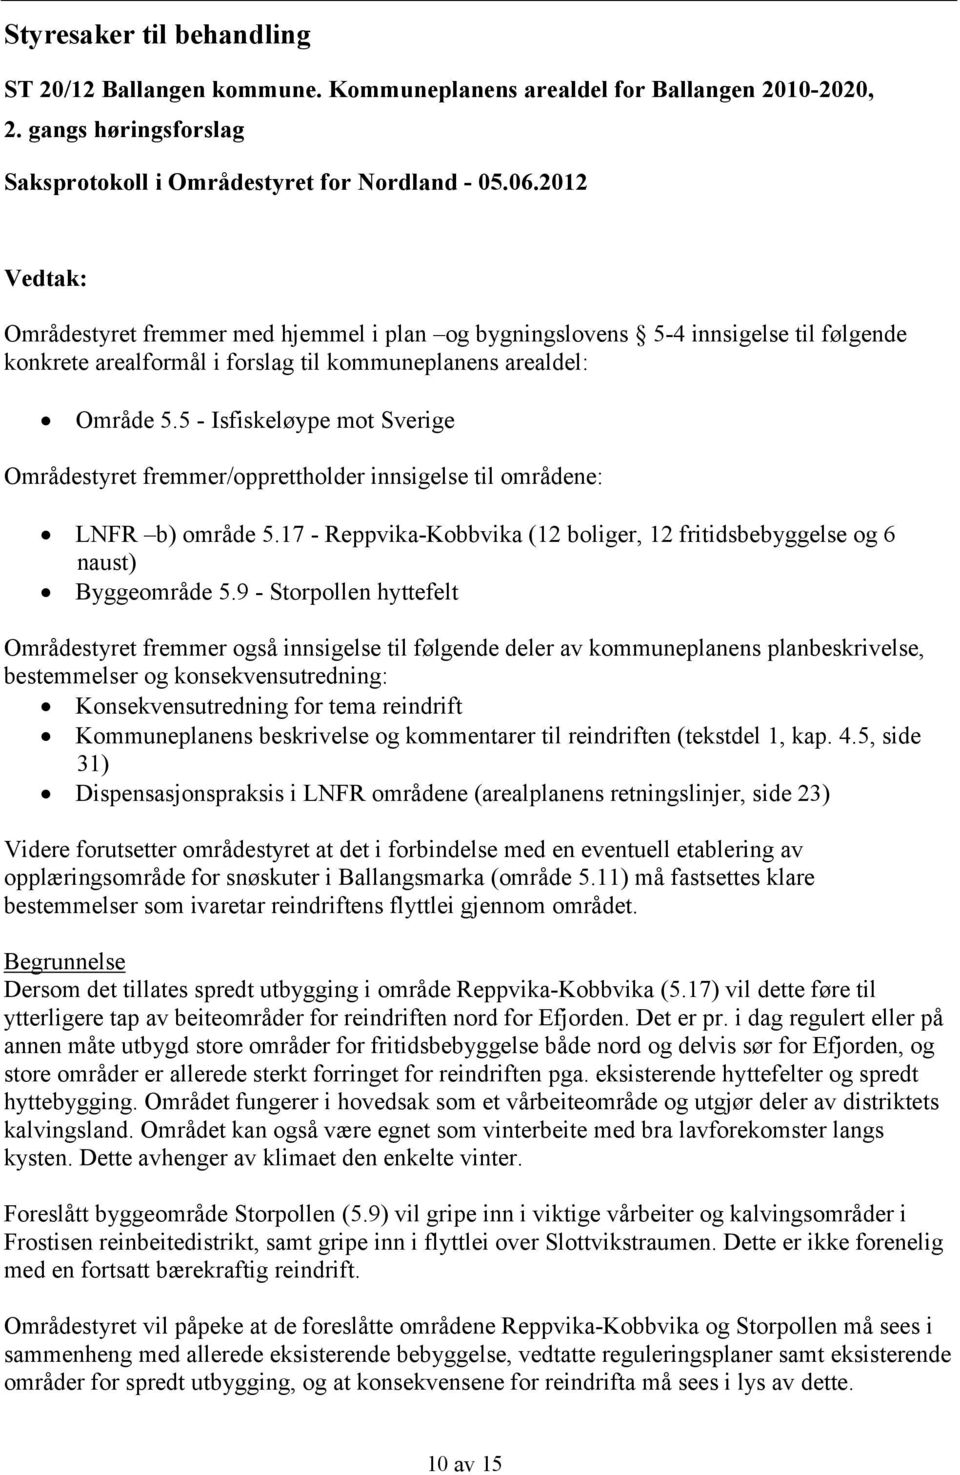 5 - Isfiskeløype mot Sverige Områdestyret fremmer/opprettholder innsigelse til områdene: LNFR b) område 5.17 - Reppvika-Kobbvika (12 boliger, 12 fritidsbebyggelse og 6 naust) Byggeområde 5.